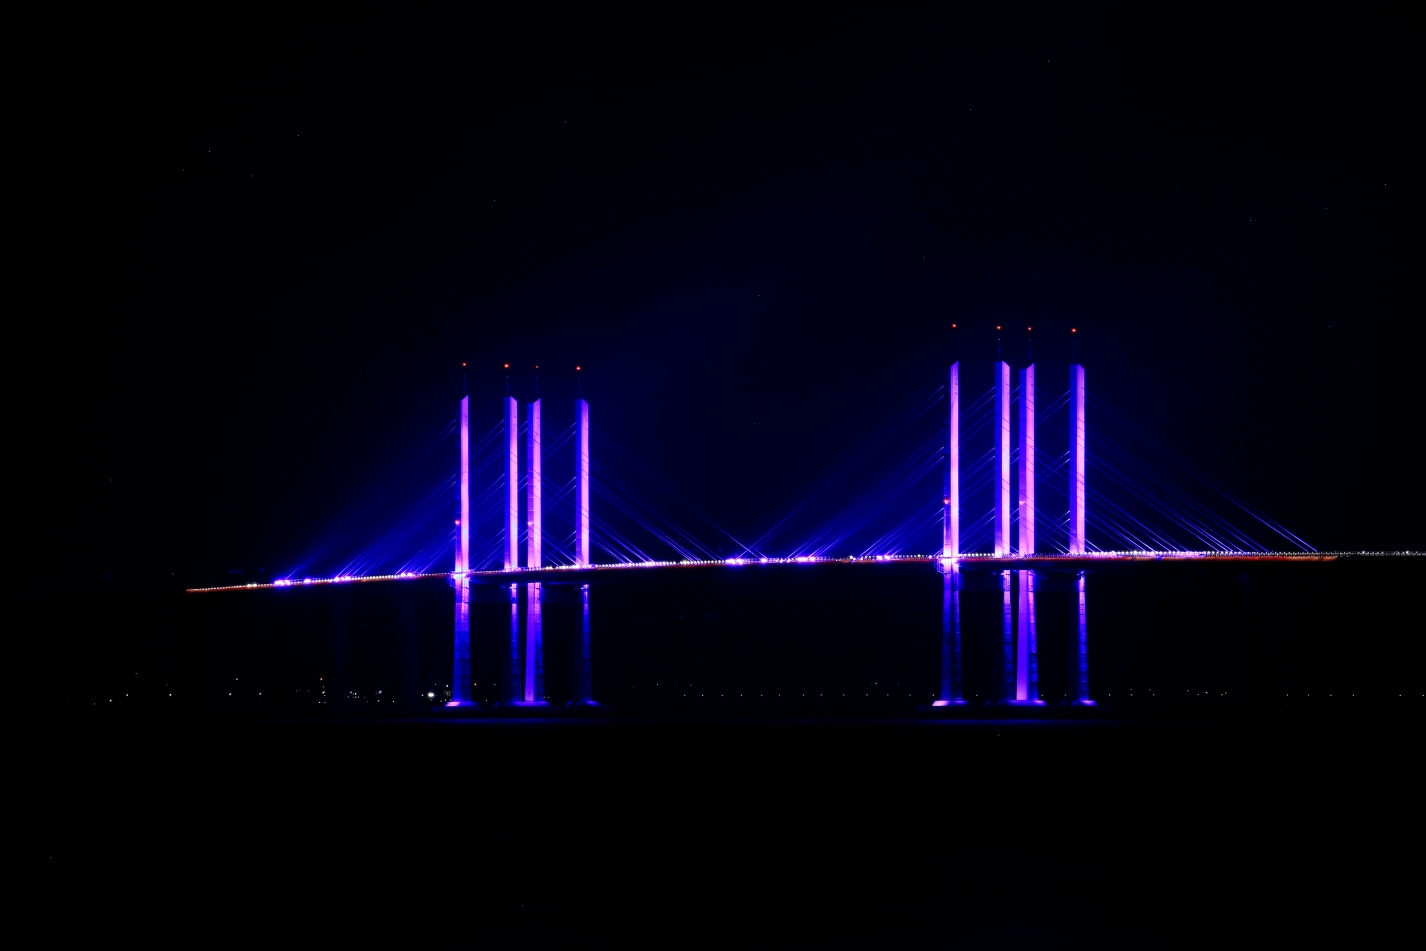 胶州湾大桥夜景图片